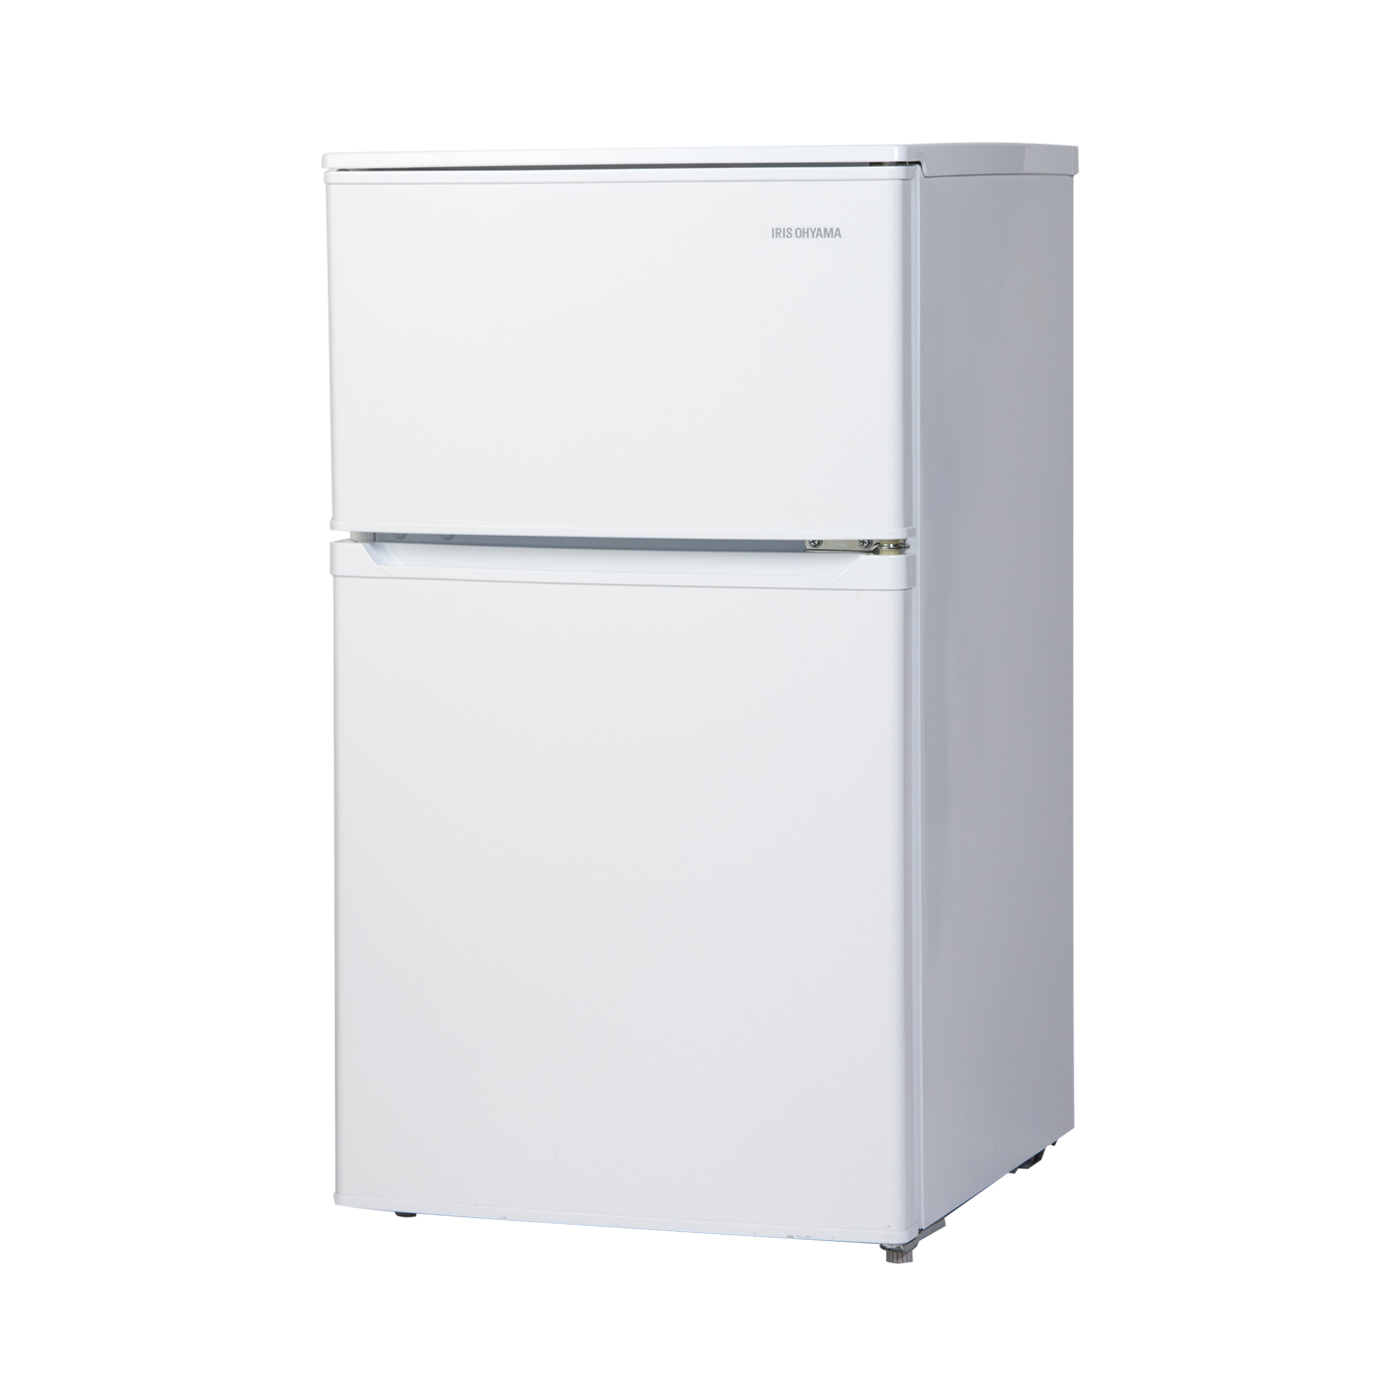 TWINBIRDツインバード冷凍冷蔵庫110L省エネ自動霜取り機能付き 18年製 